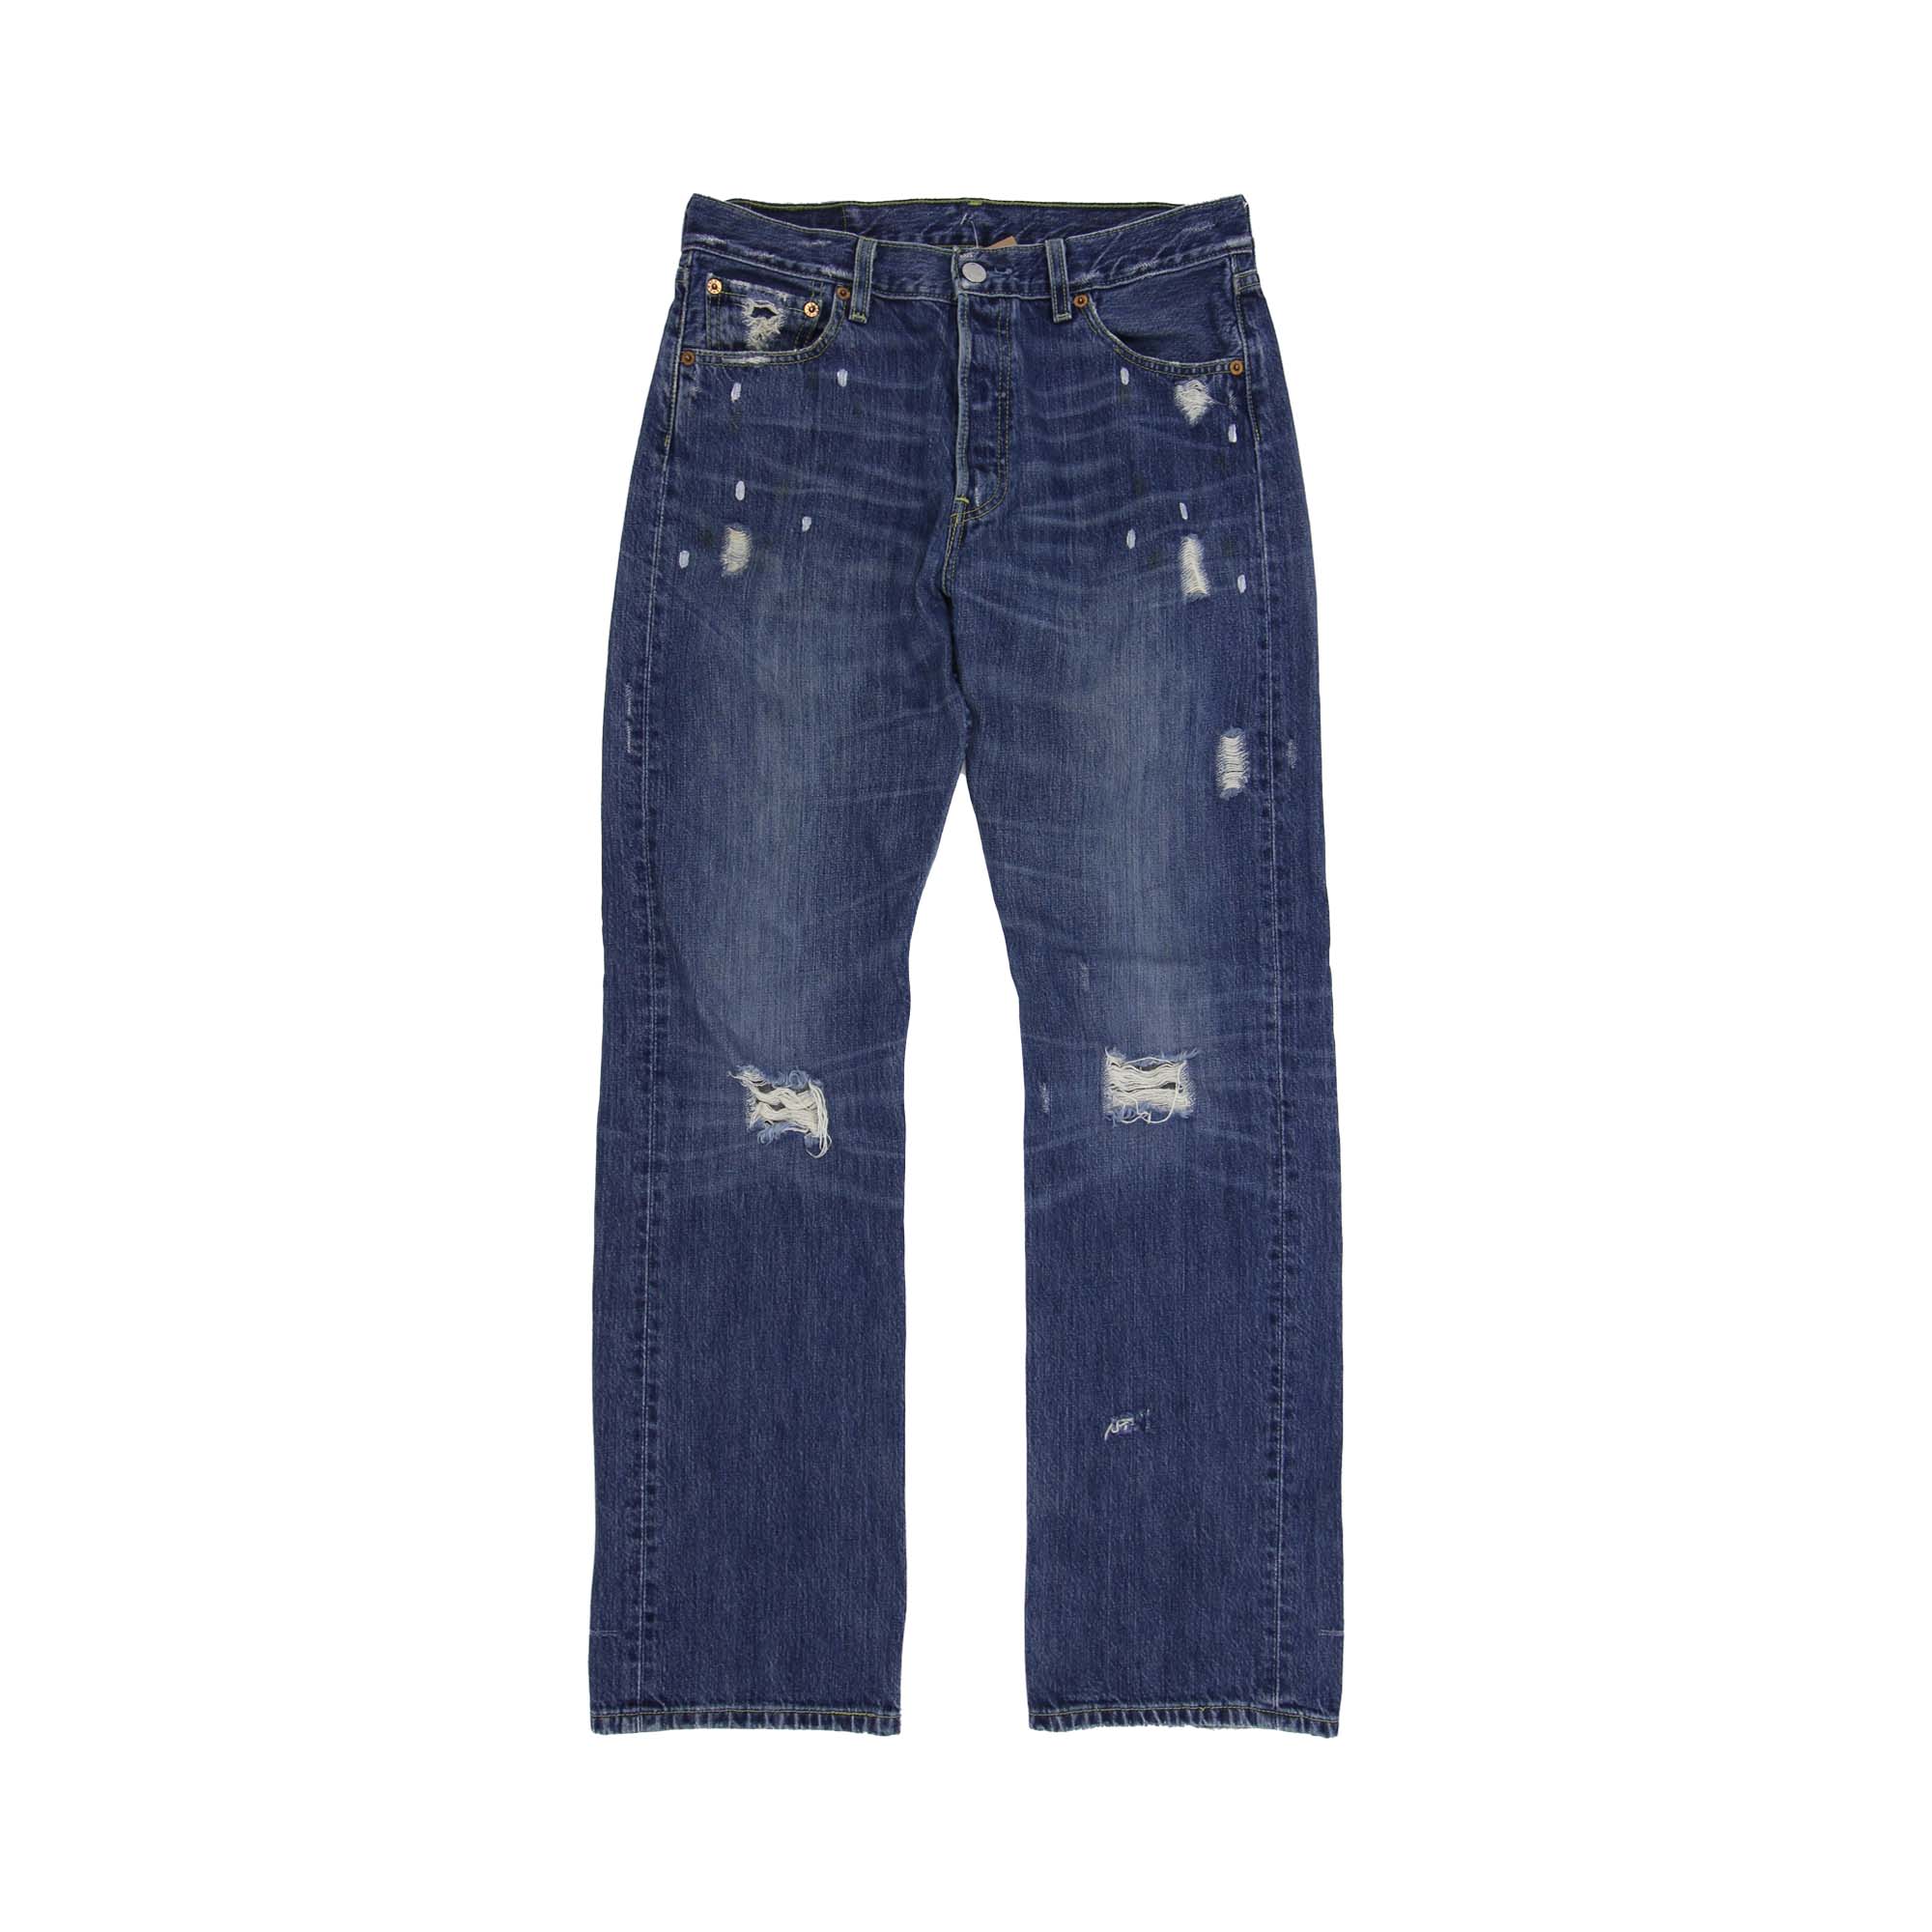 Levi's 501 Denim Jeans - W30 L32